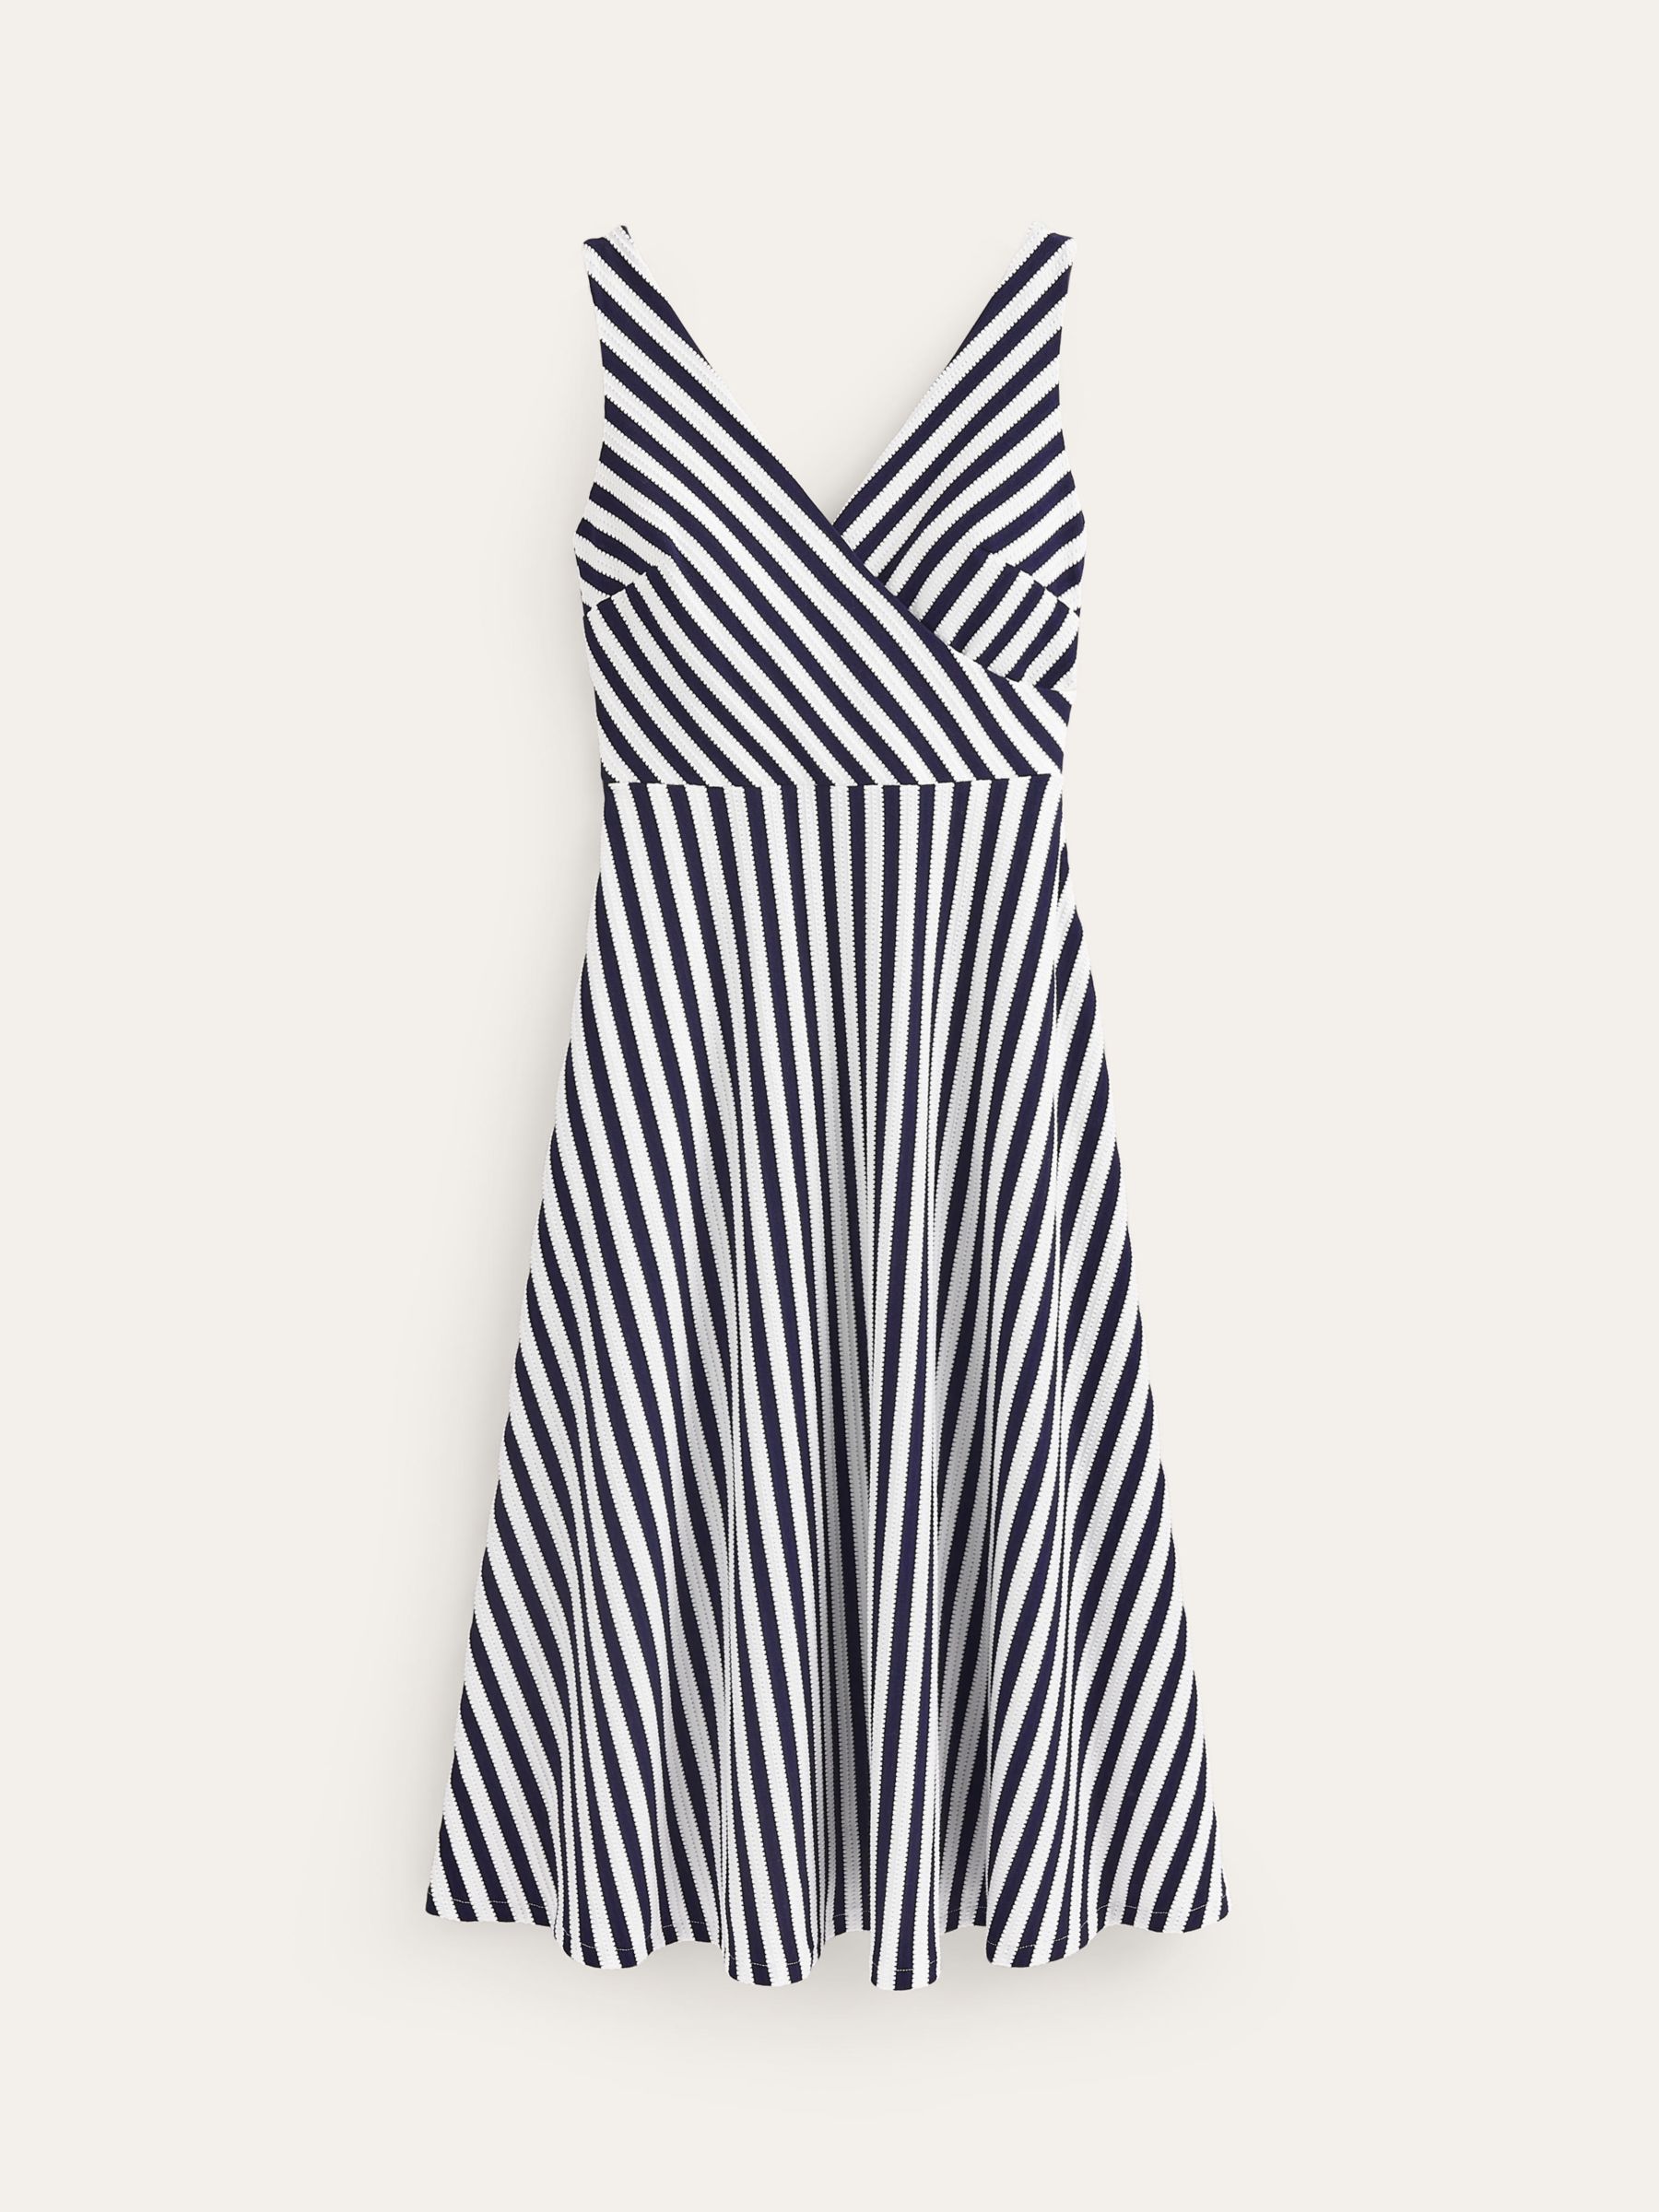 Boden Stripe Jersey Wrap Neck Midi Dress, Navy/Ivory, 12